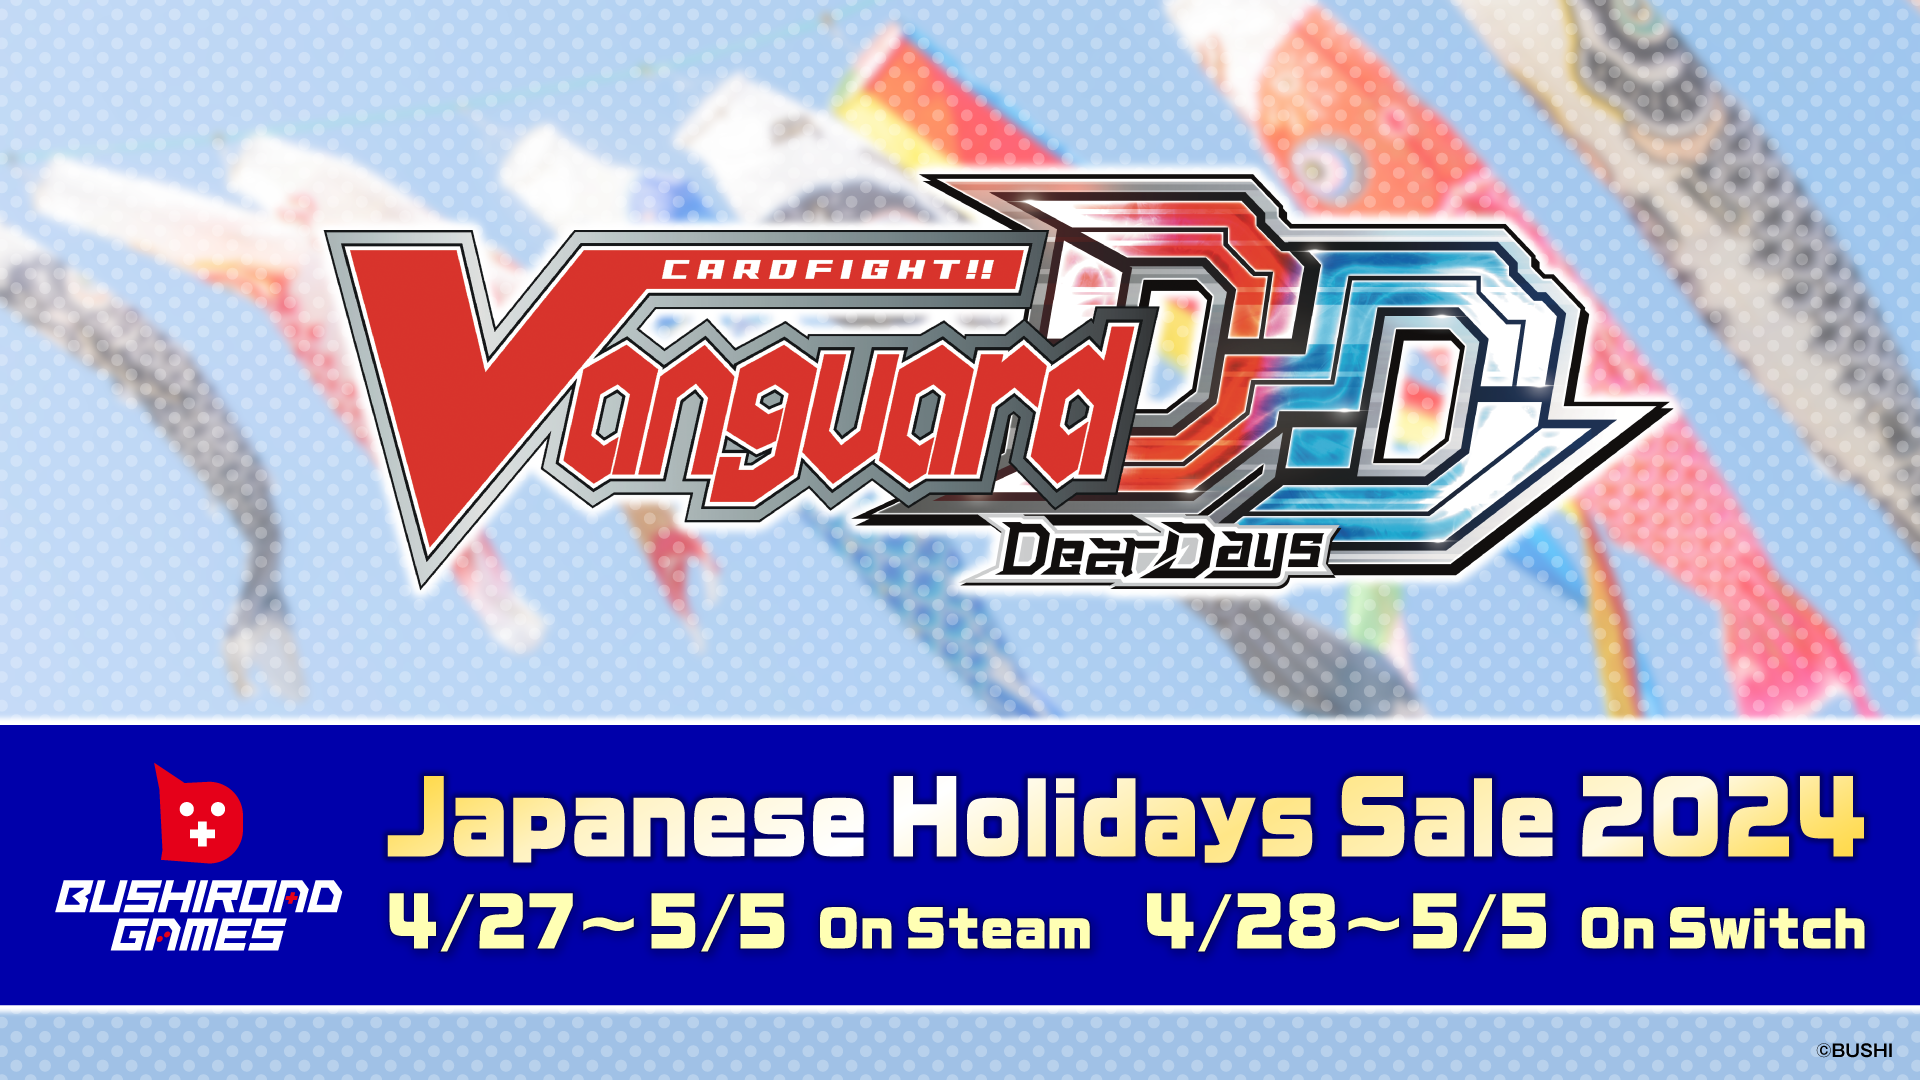 Cardfight!! Vanguard Dear Days Sale 【Japanese Holidays Sale 2024】